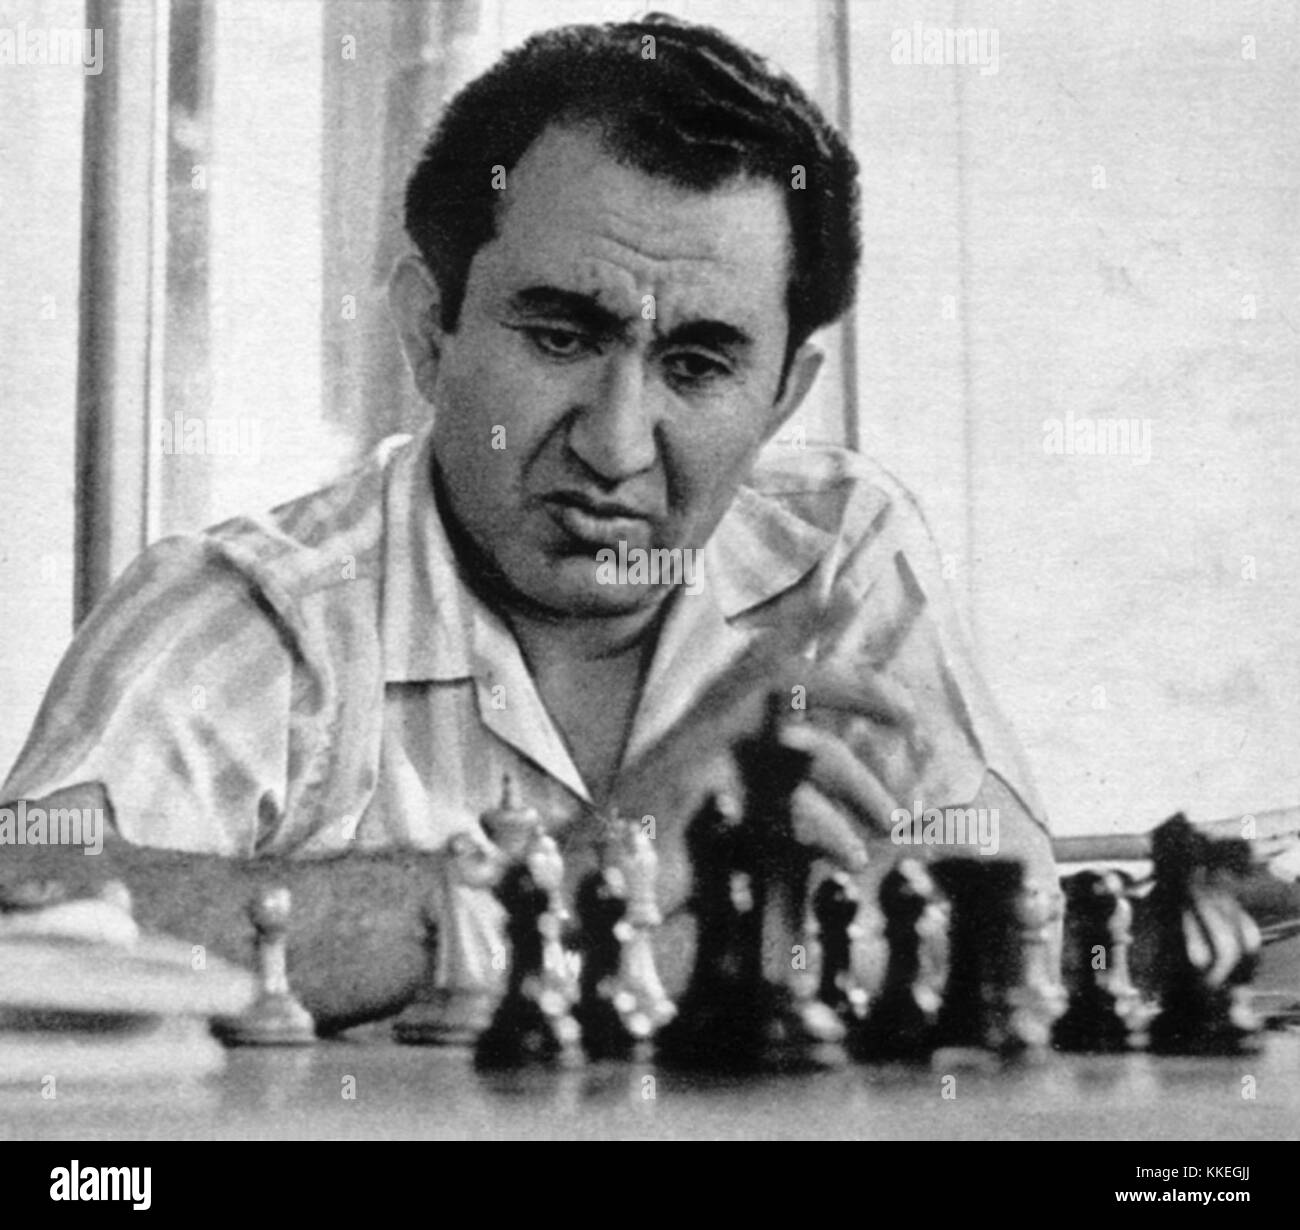 Tigran V Petrosian vs Robert James Fischer (1958)